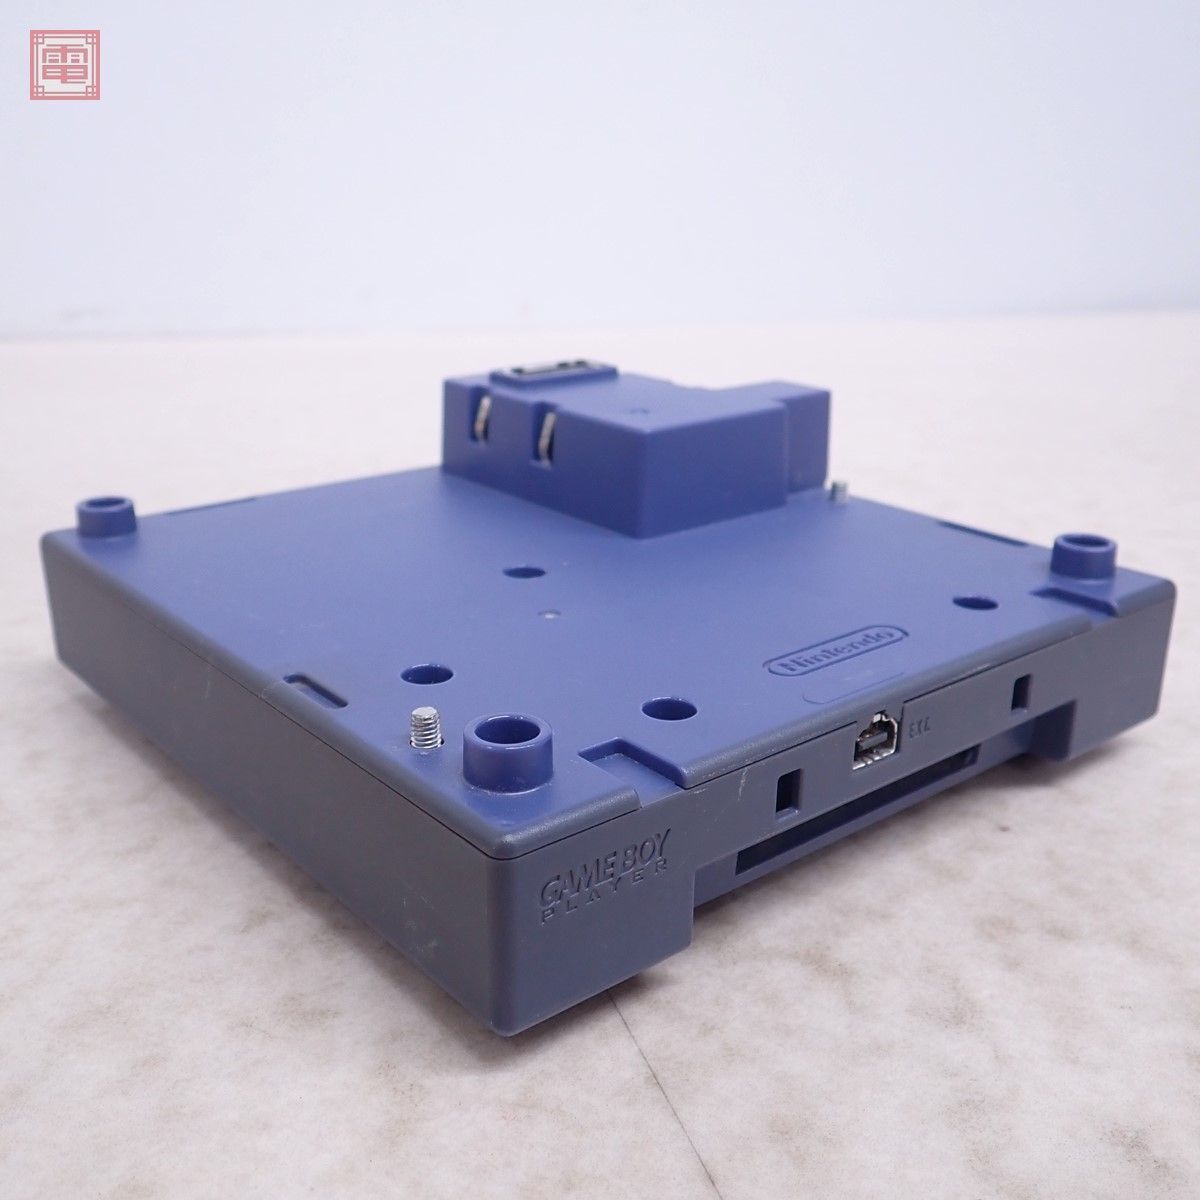  рабочий товар GC Game Boy плеер GAME BOY PLAYER корпус DOL-0017 violet Nintendo nintendo Nintendo диск / с руководством пользователя [10